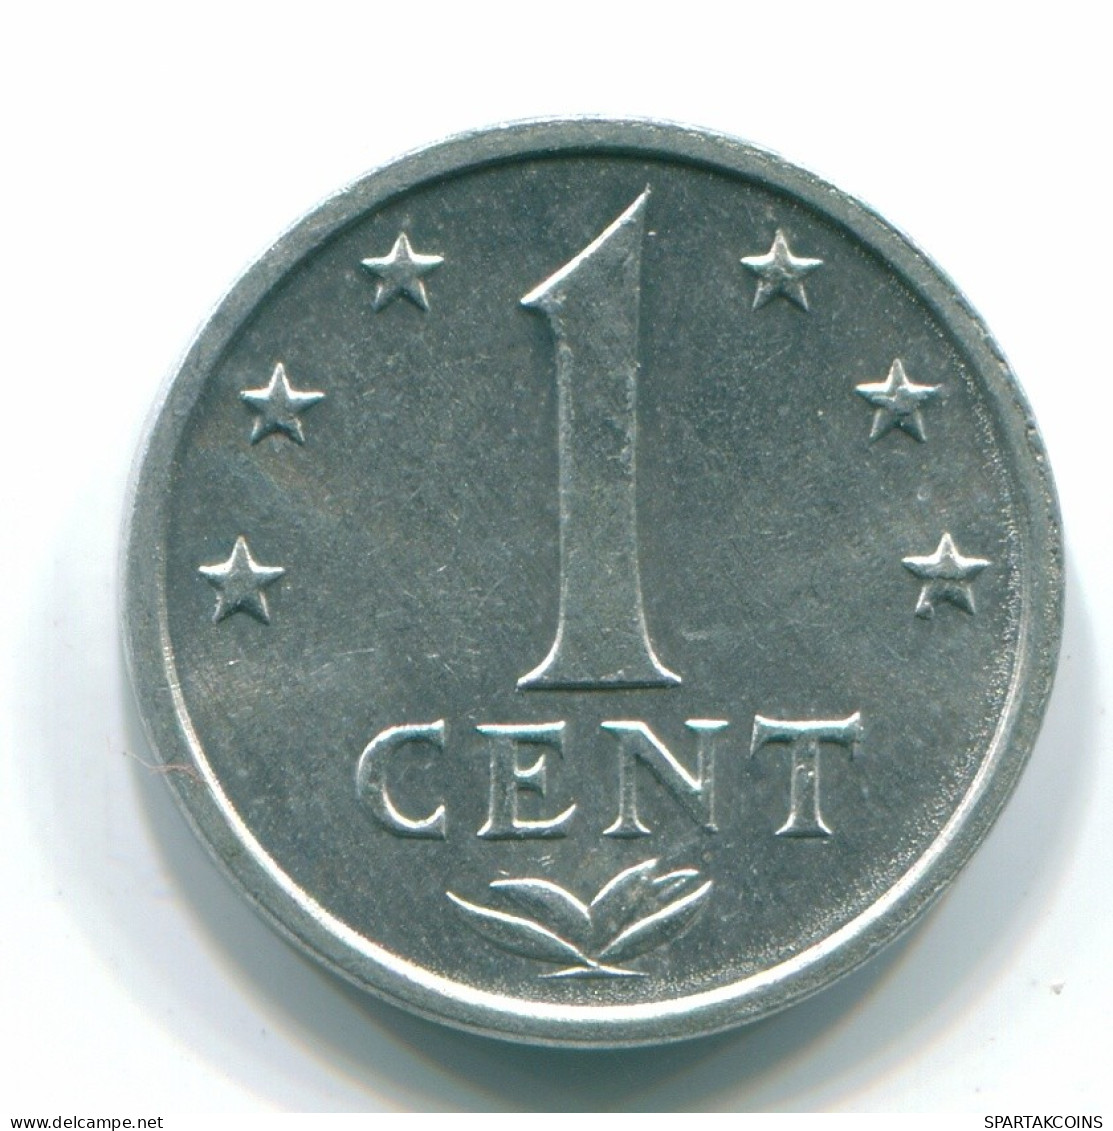 1 CENT 1980 NETHERLANDS ANTILLES Aluminium Colonial Coin #S11188.U.A - Antilles Néerlandaises